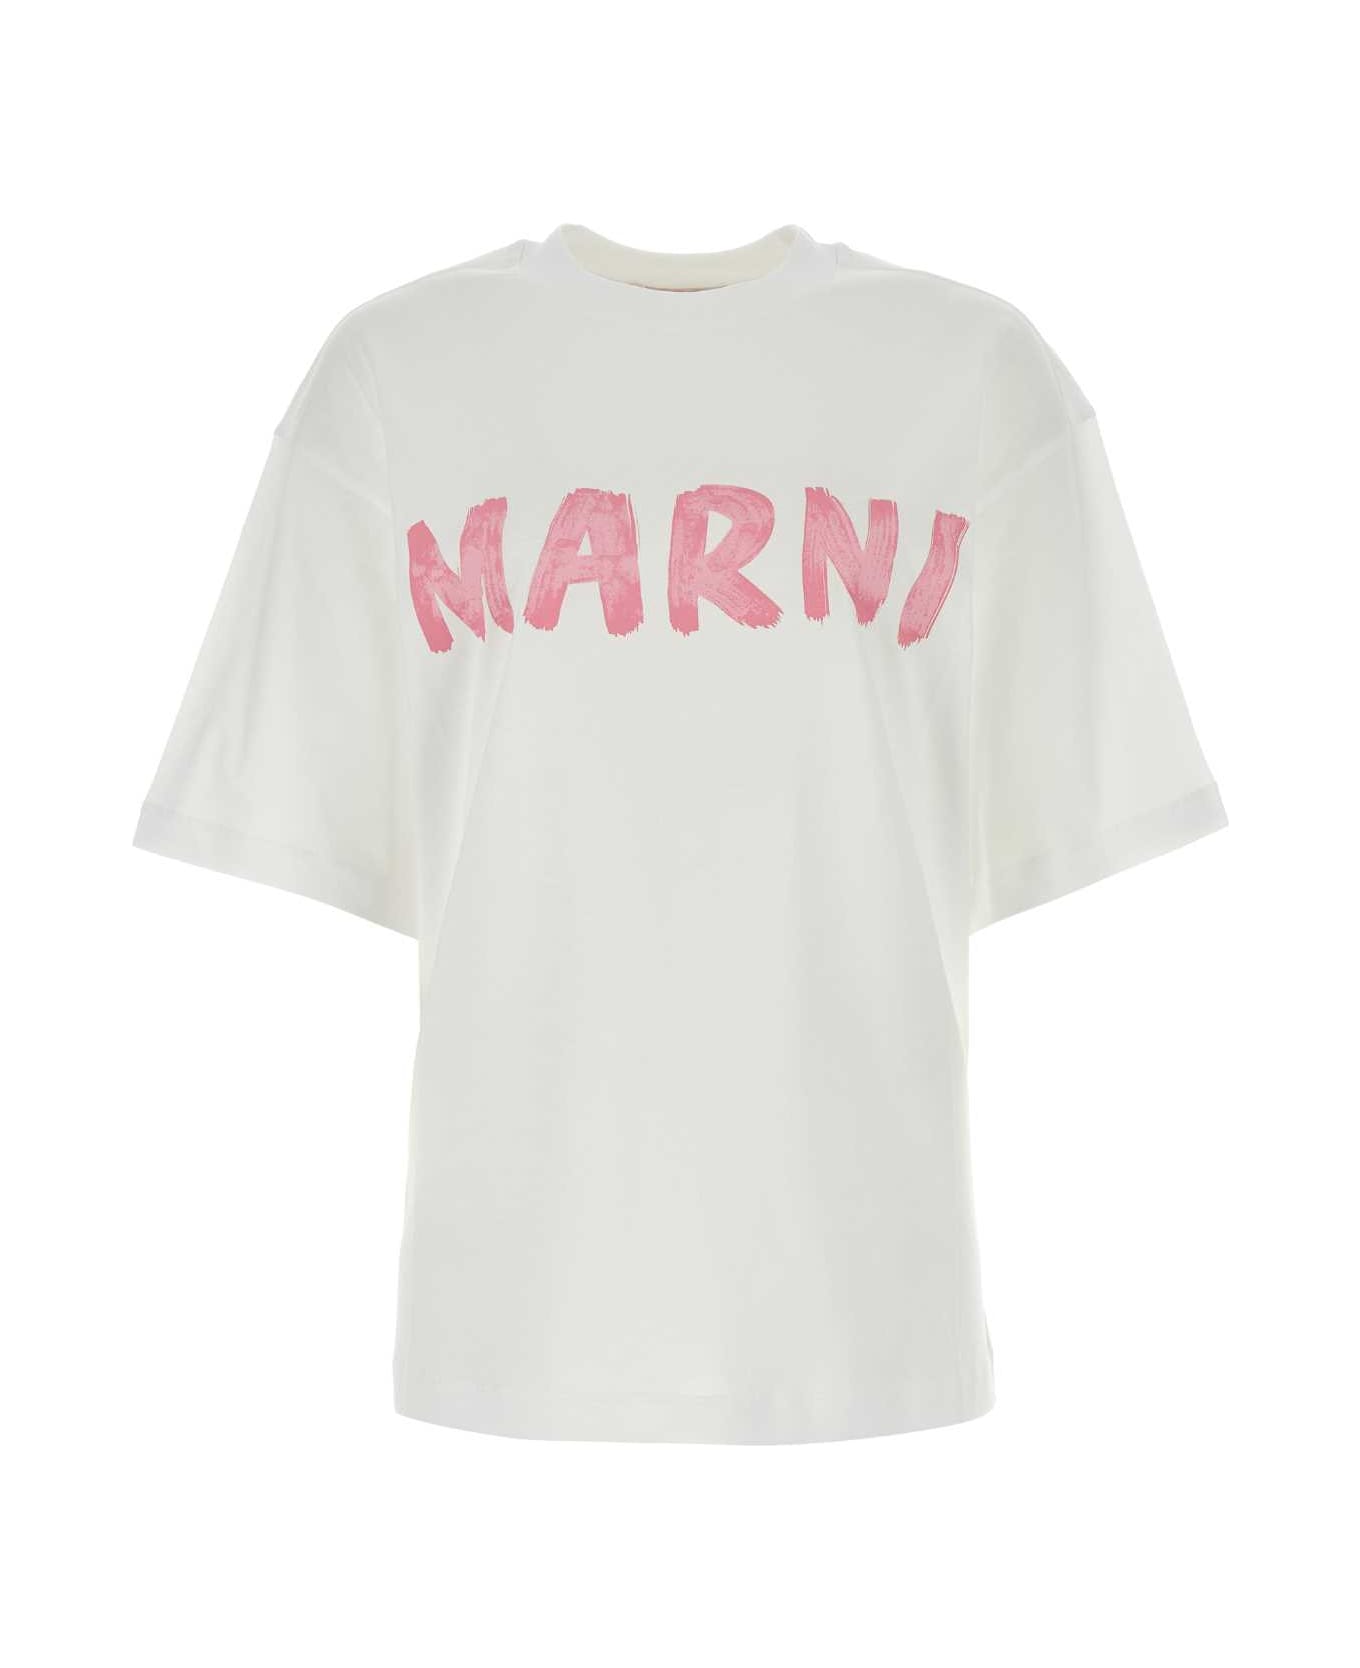 Marni White Cotton Oversize T-shirt - L5W01 Tシャツ